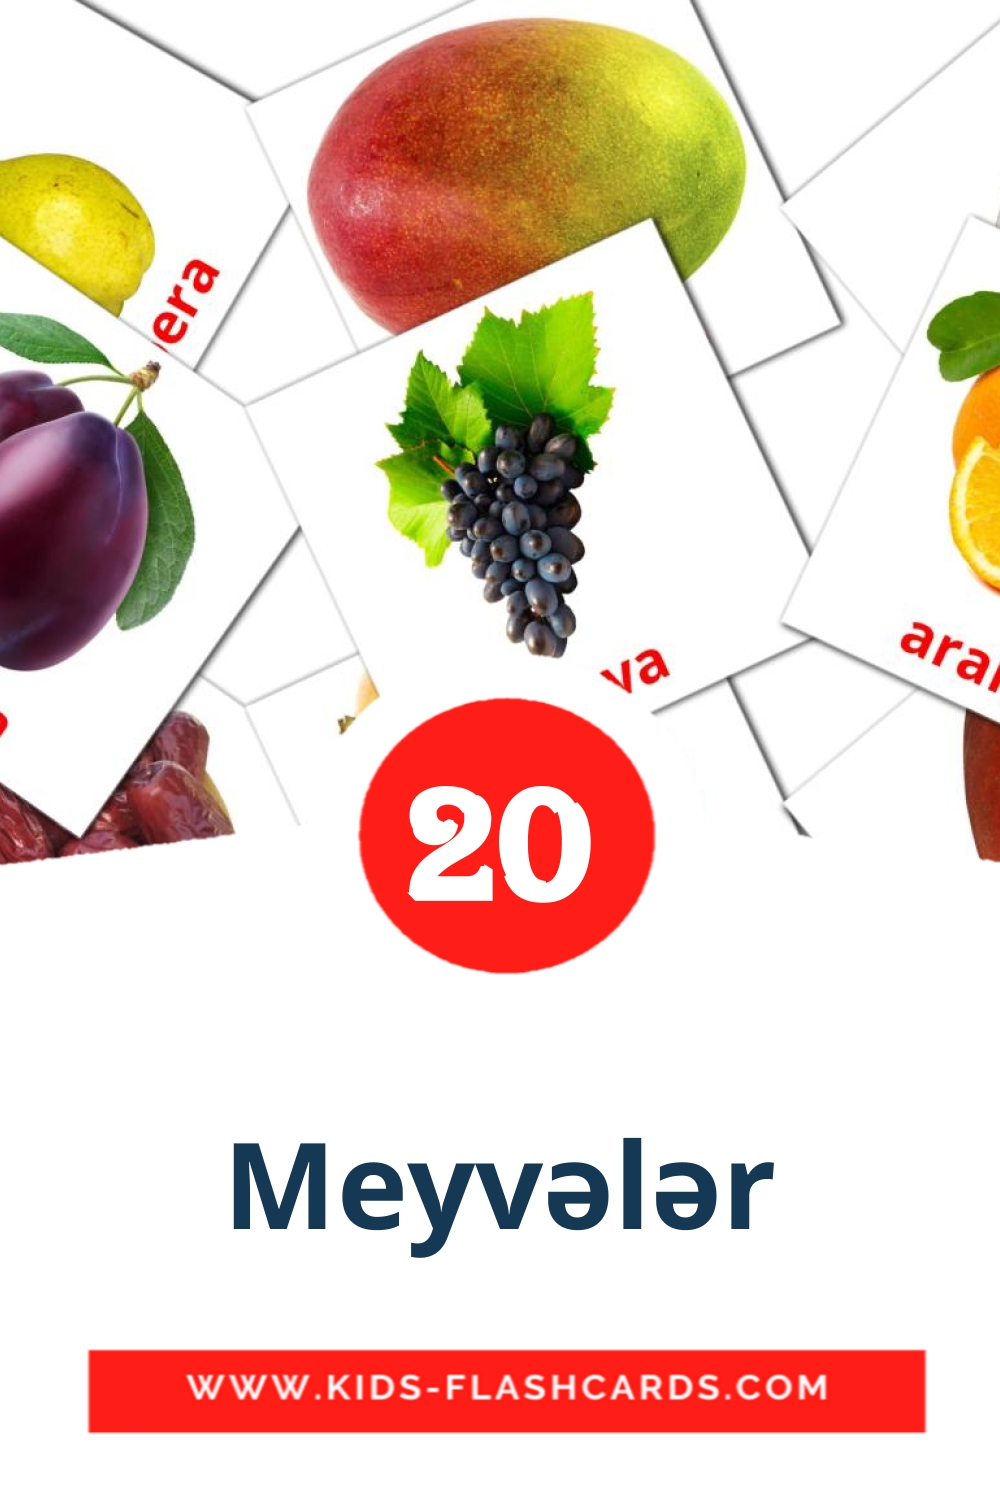 Meyvələr на азербайджанском для Детского Сада (20 карточек)